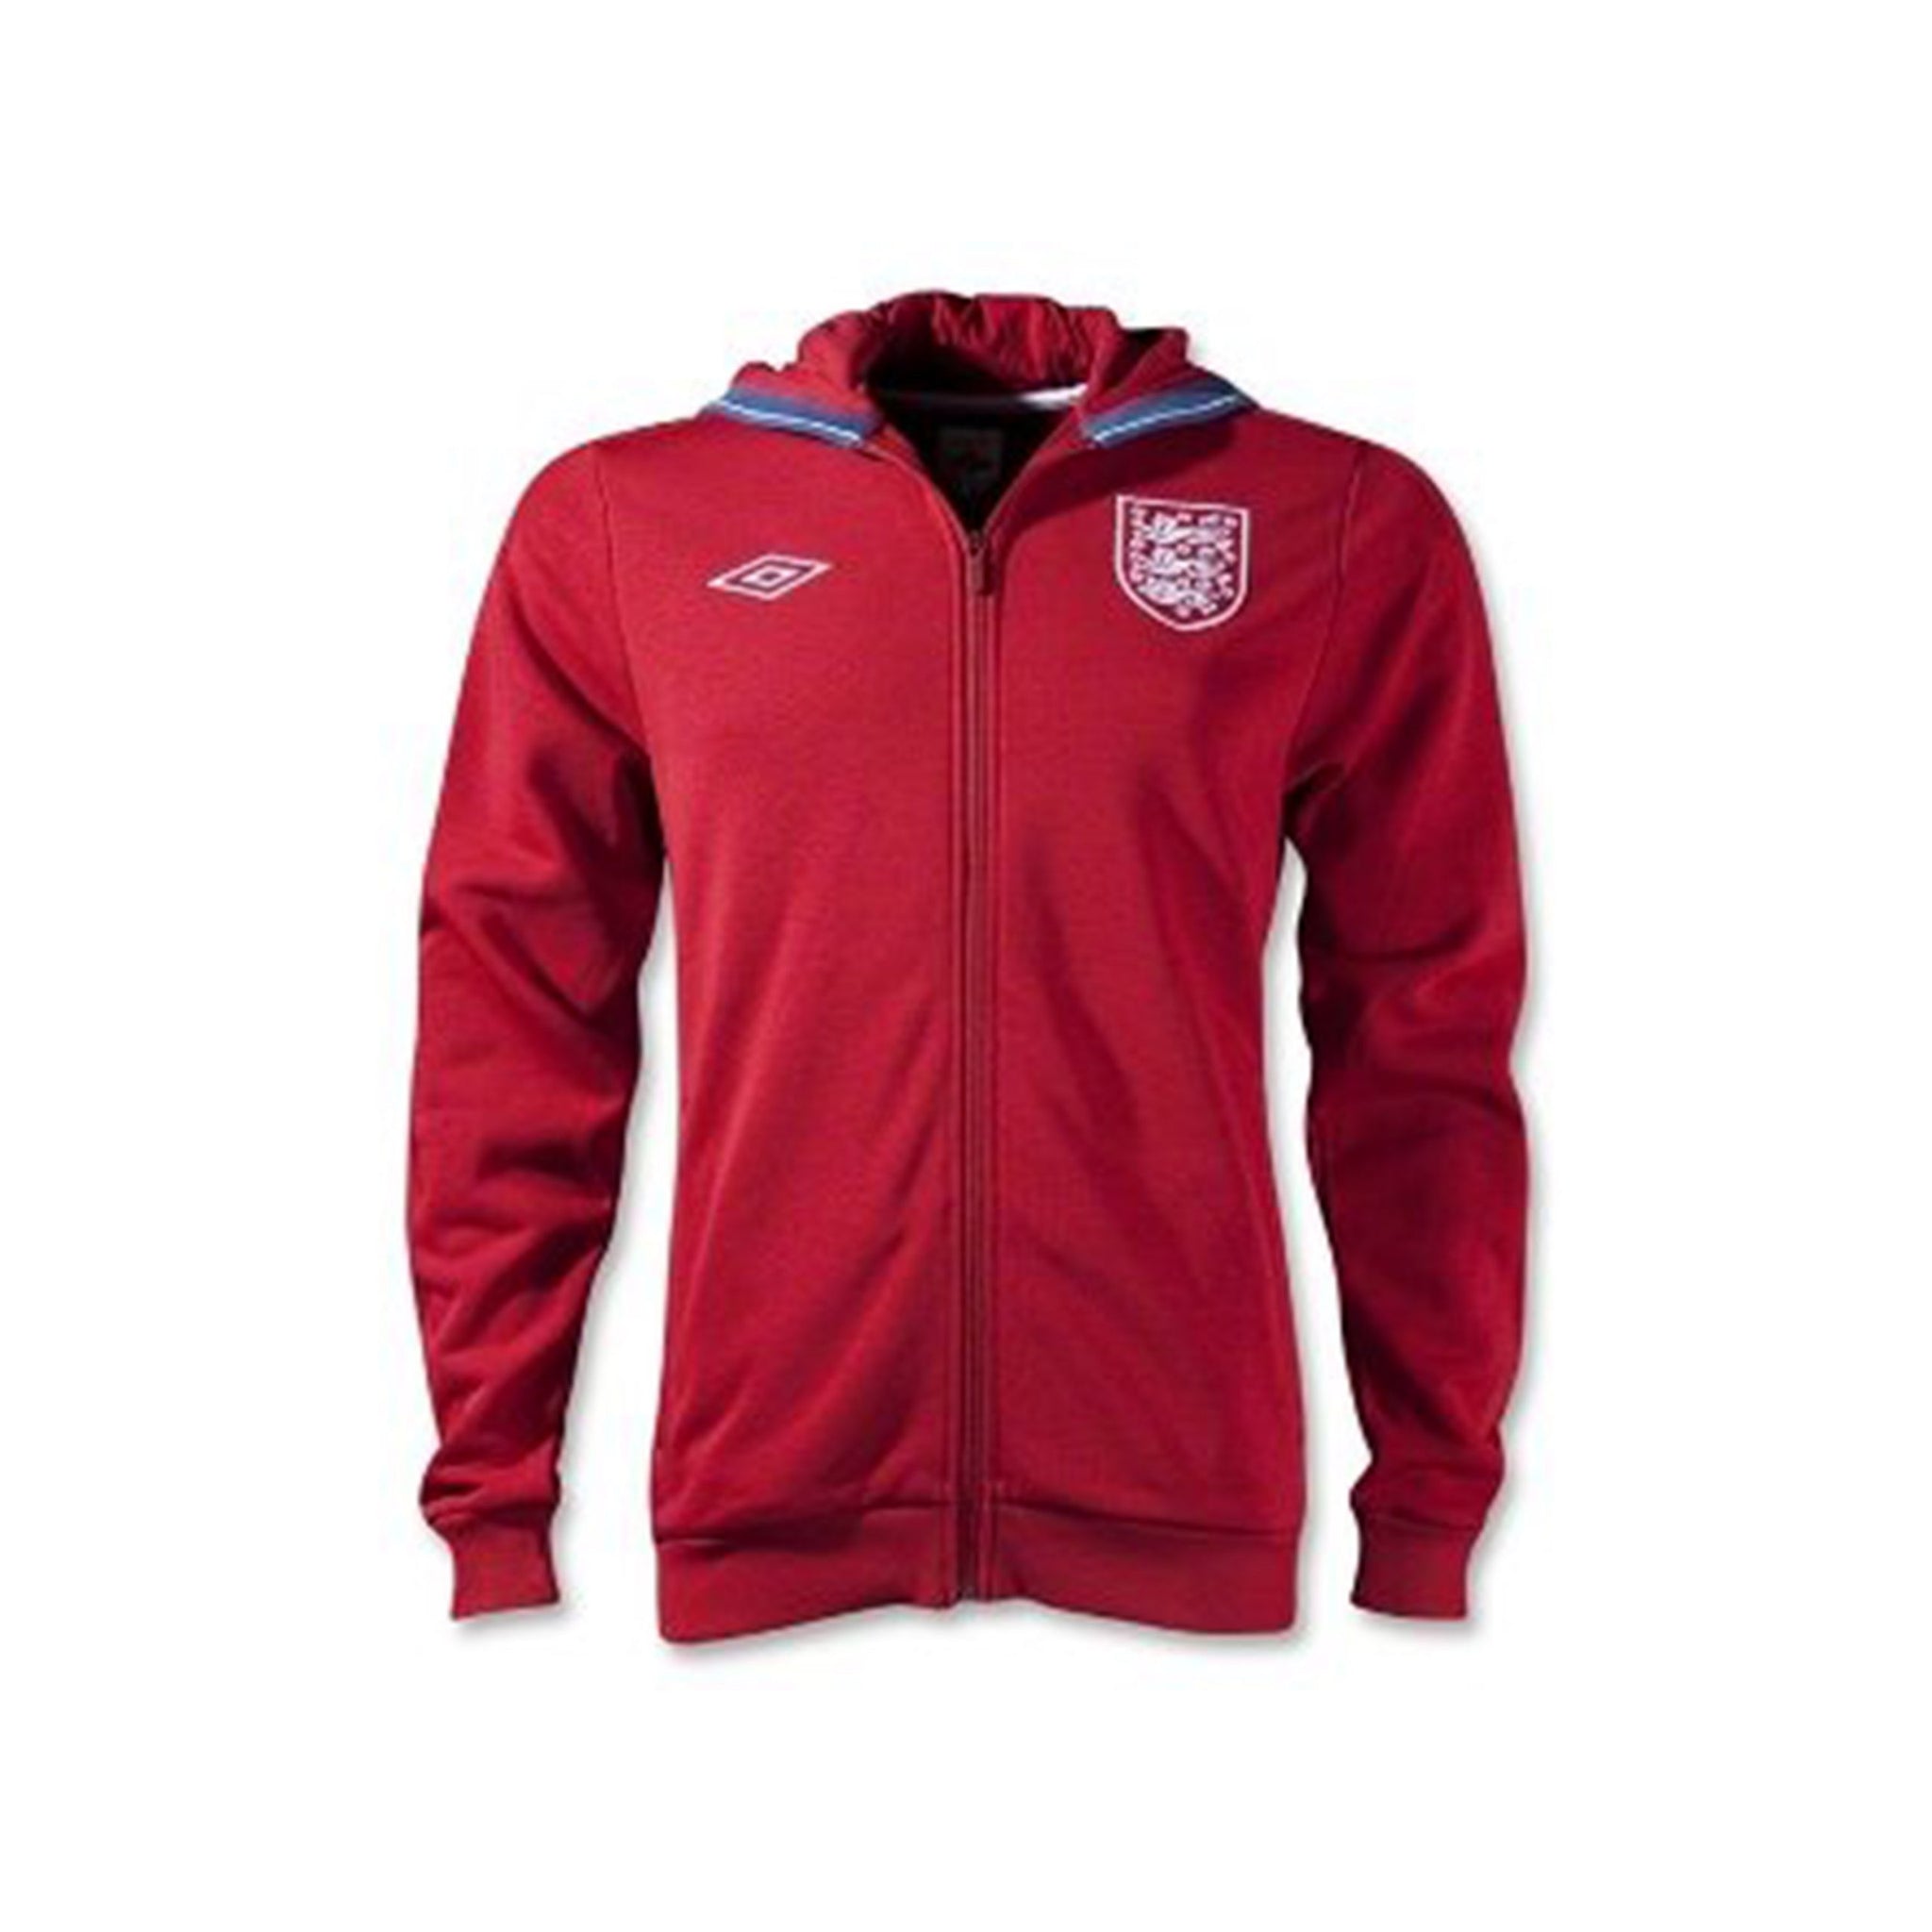 UMBRO England Hoodie Jacket 2012